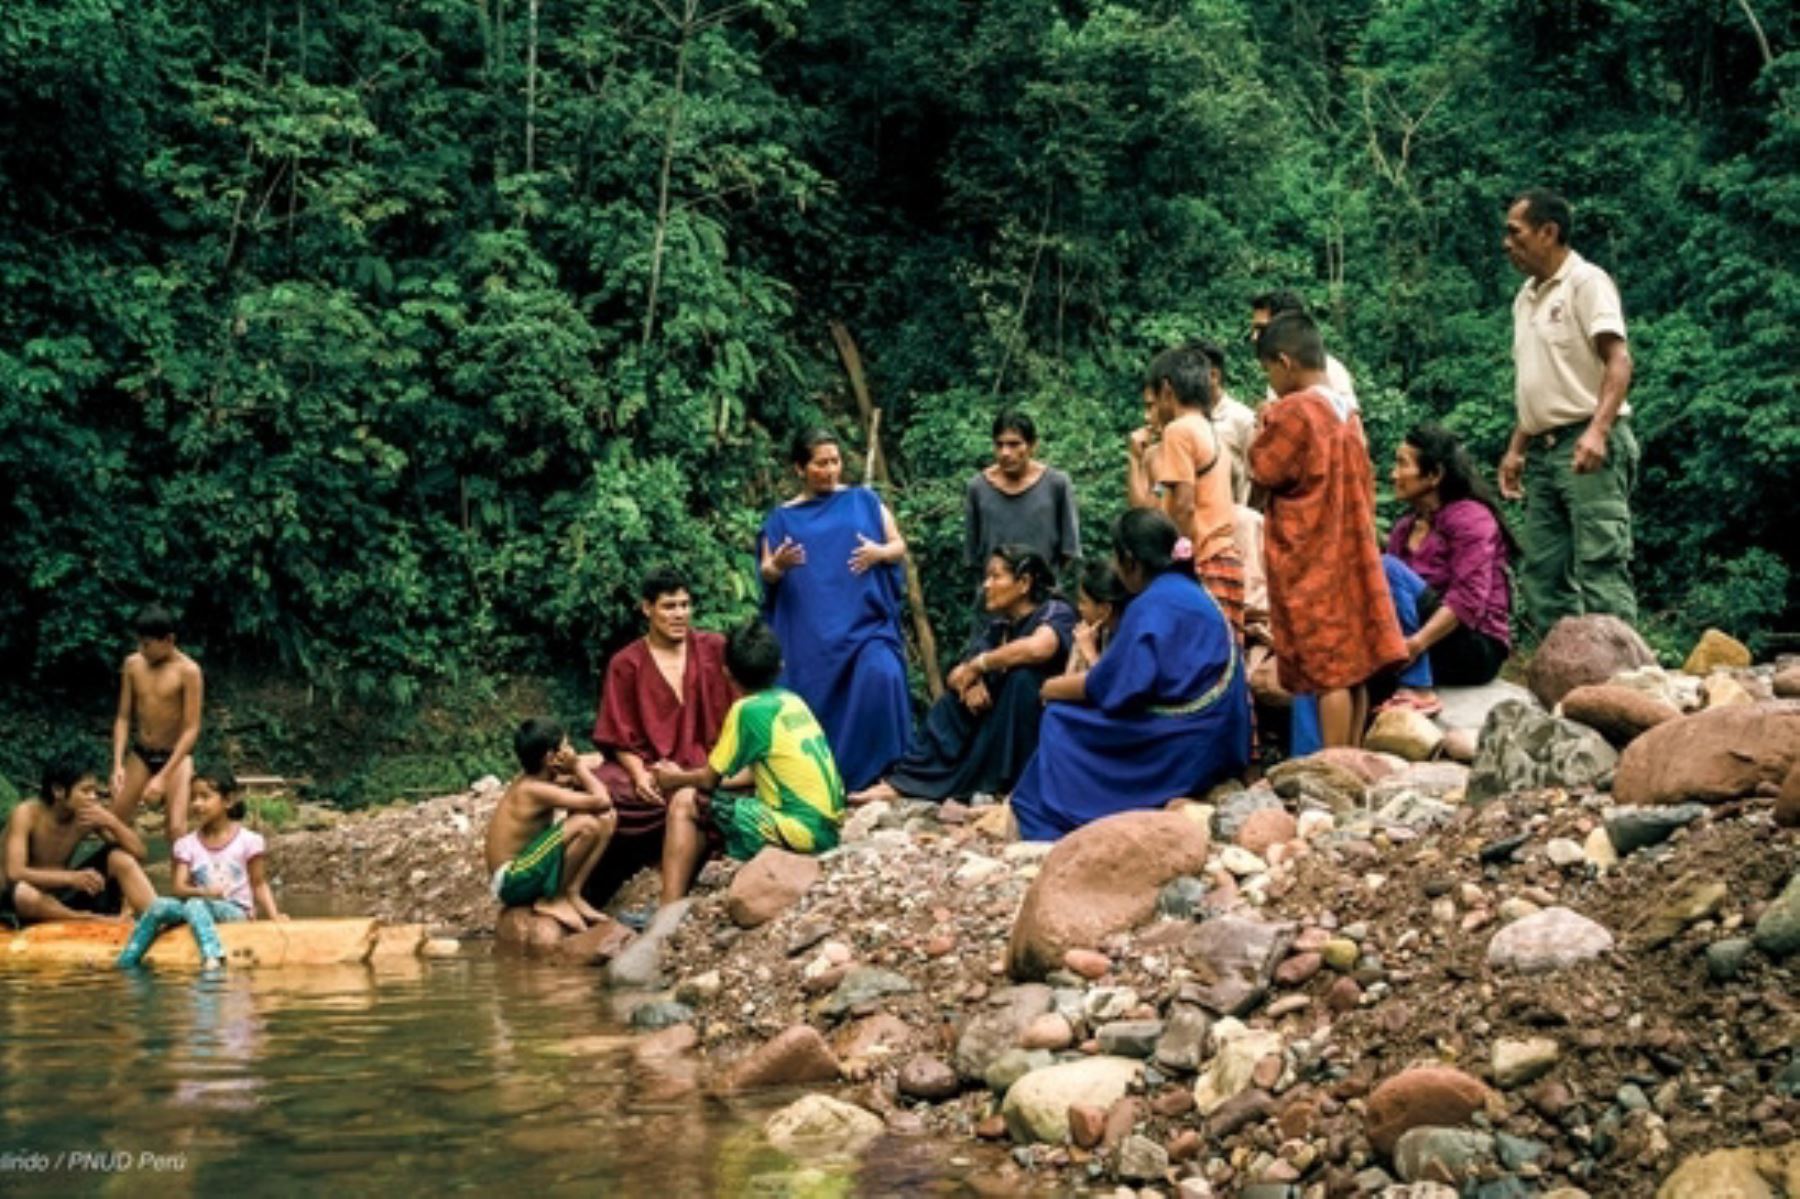 Los defensores ambientales que habitan en zonas aledañas a los bosques o en áreas protegidas son guardianes de los recursos naturales. Foto: Minam